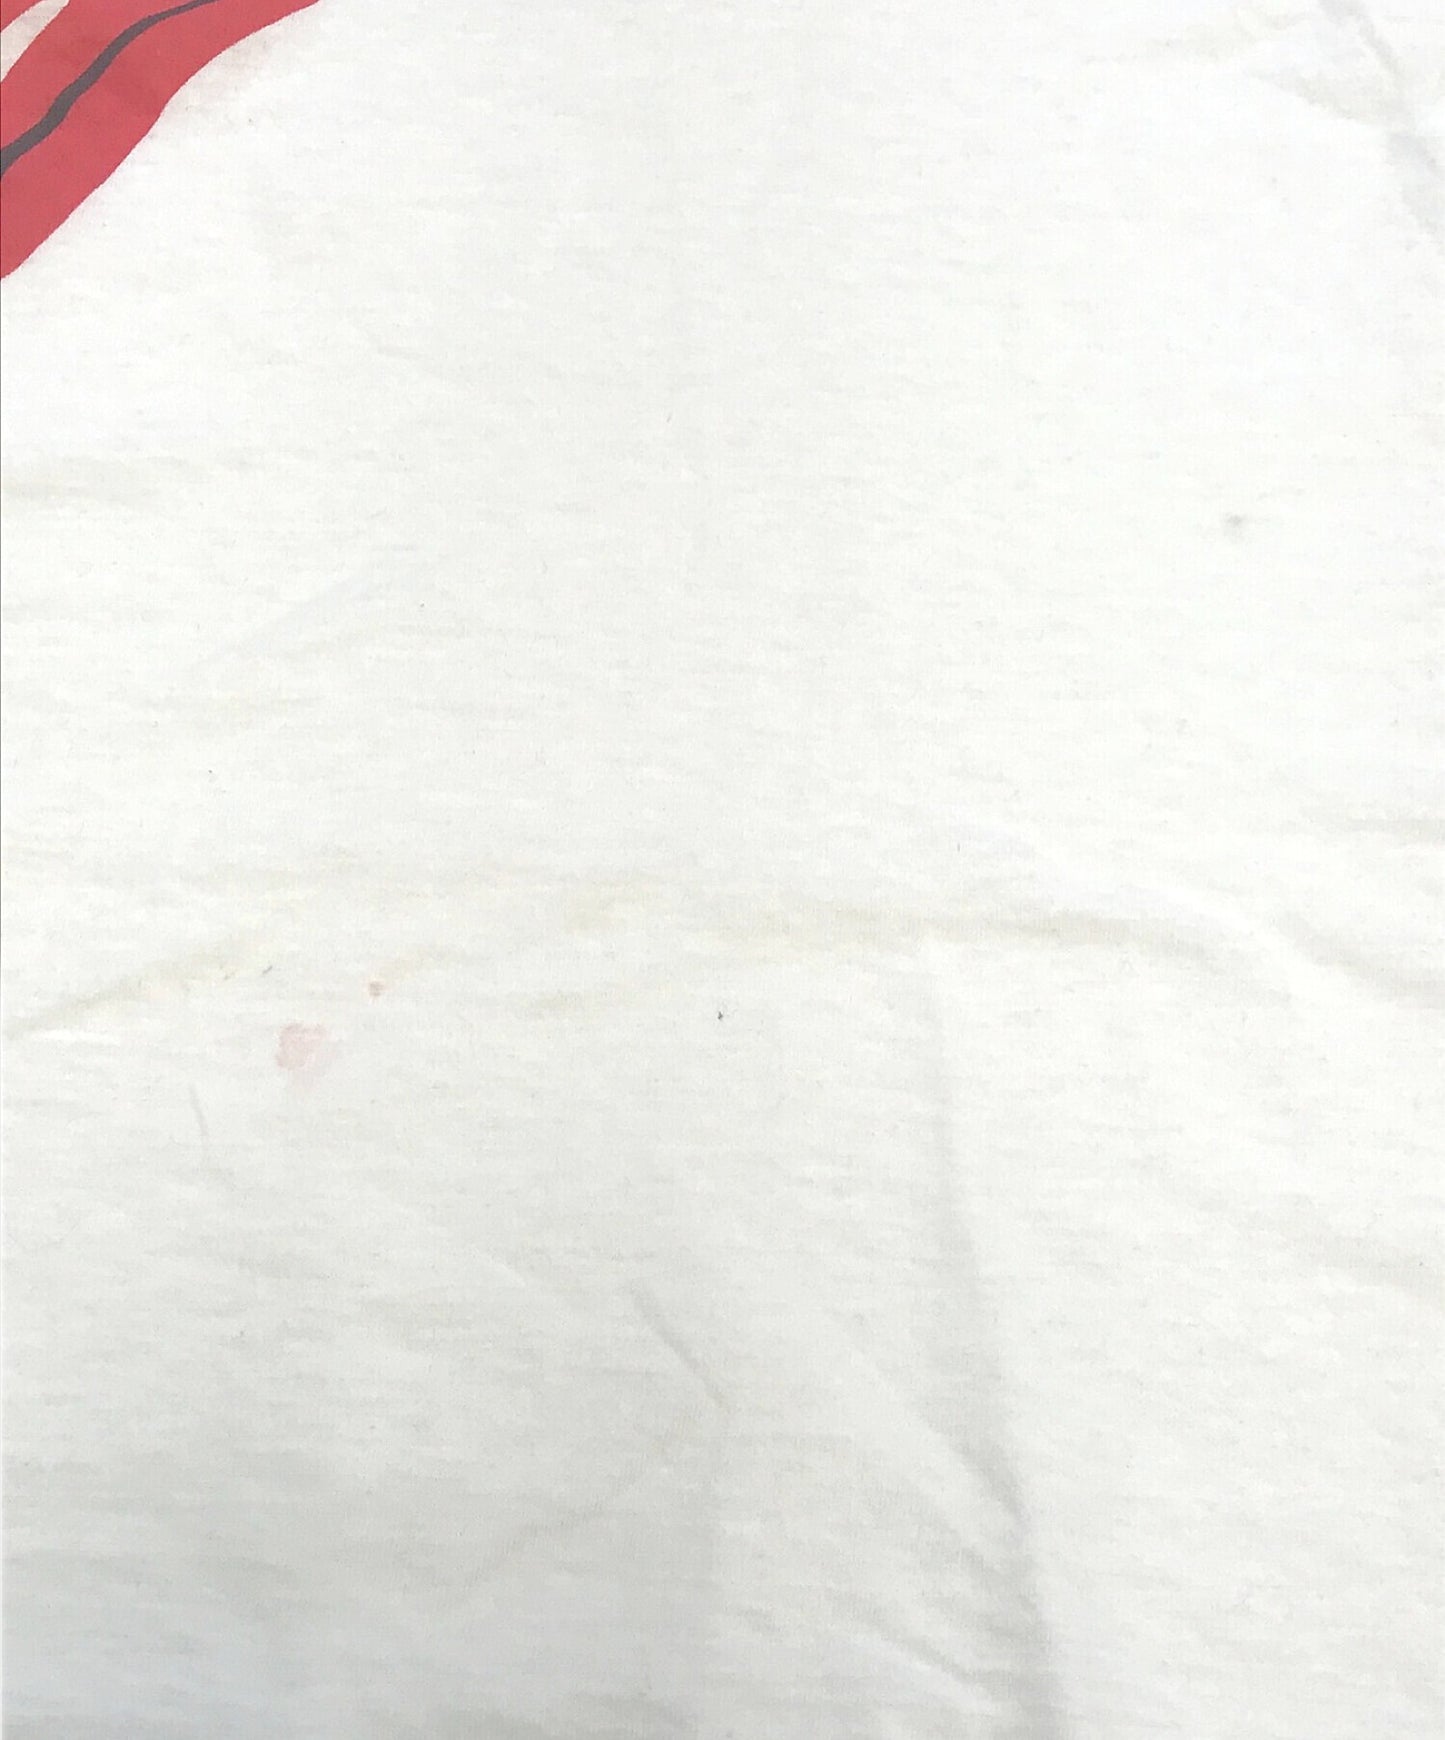 롤링 스톤 80 년대 밴드 티셔츠